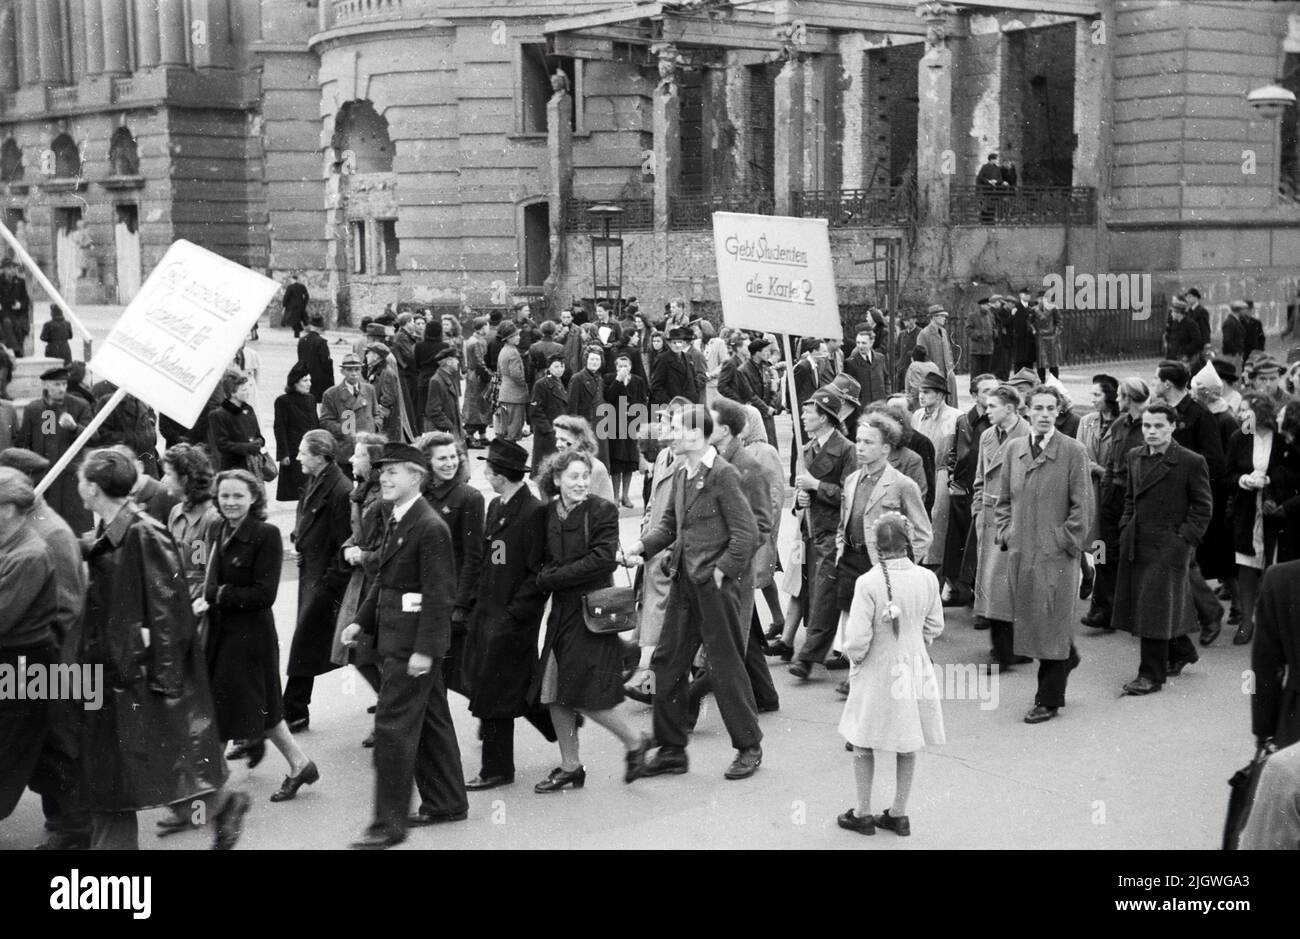 Maifeier Berlin 1947 - Demonstrationszug bei der Feier zum 1. Mai vor der Alten Bibliothek am Bebelplatz a Berlino, Germania 1947. Foto Stock